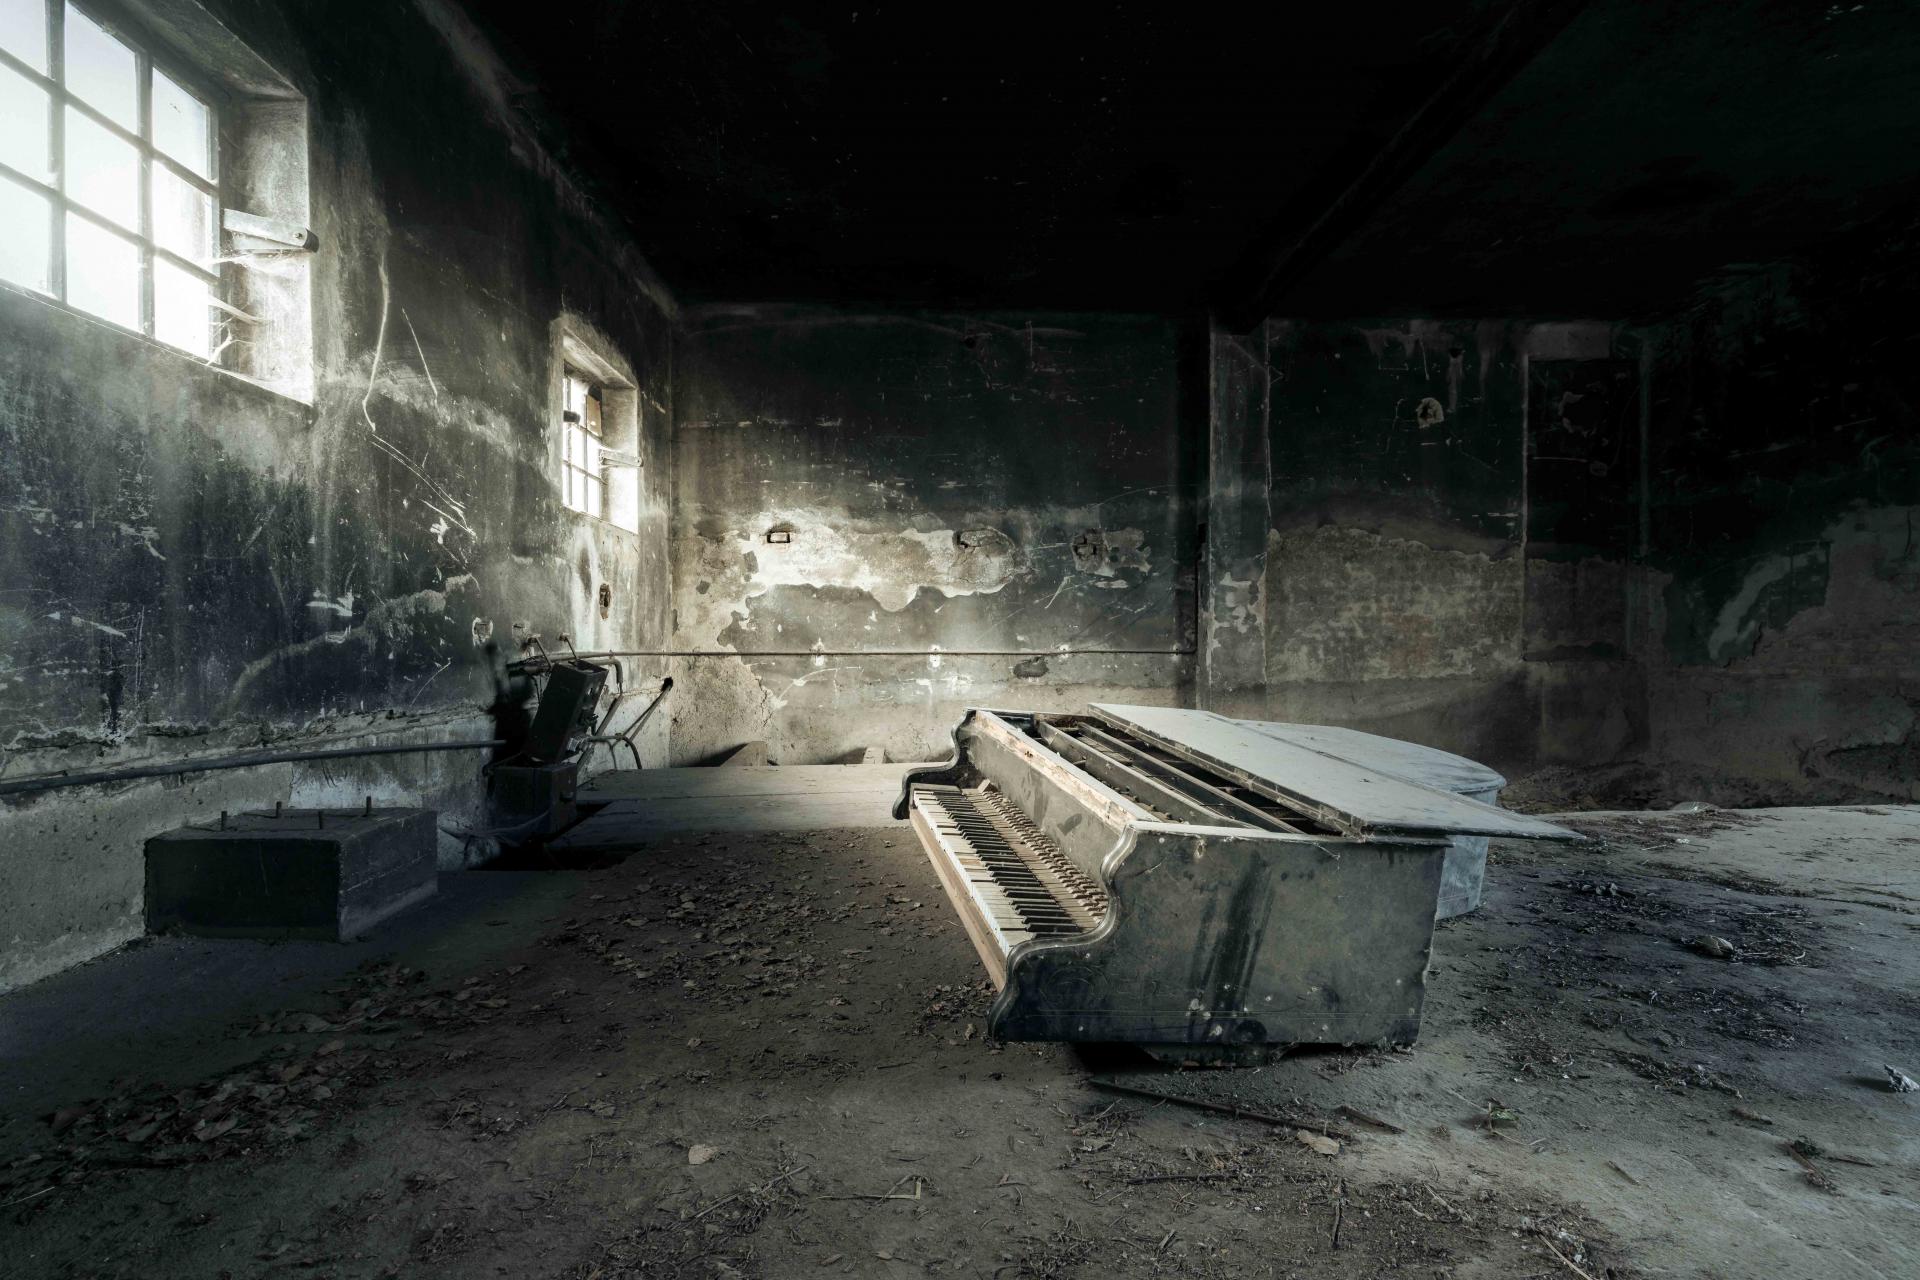 New York Photography Awards Winner - Requiem pour pianos